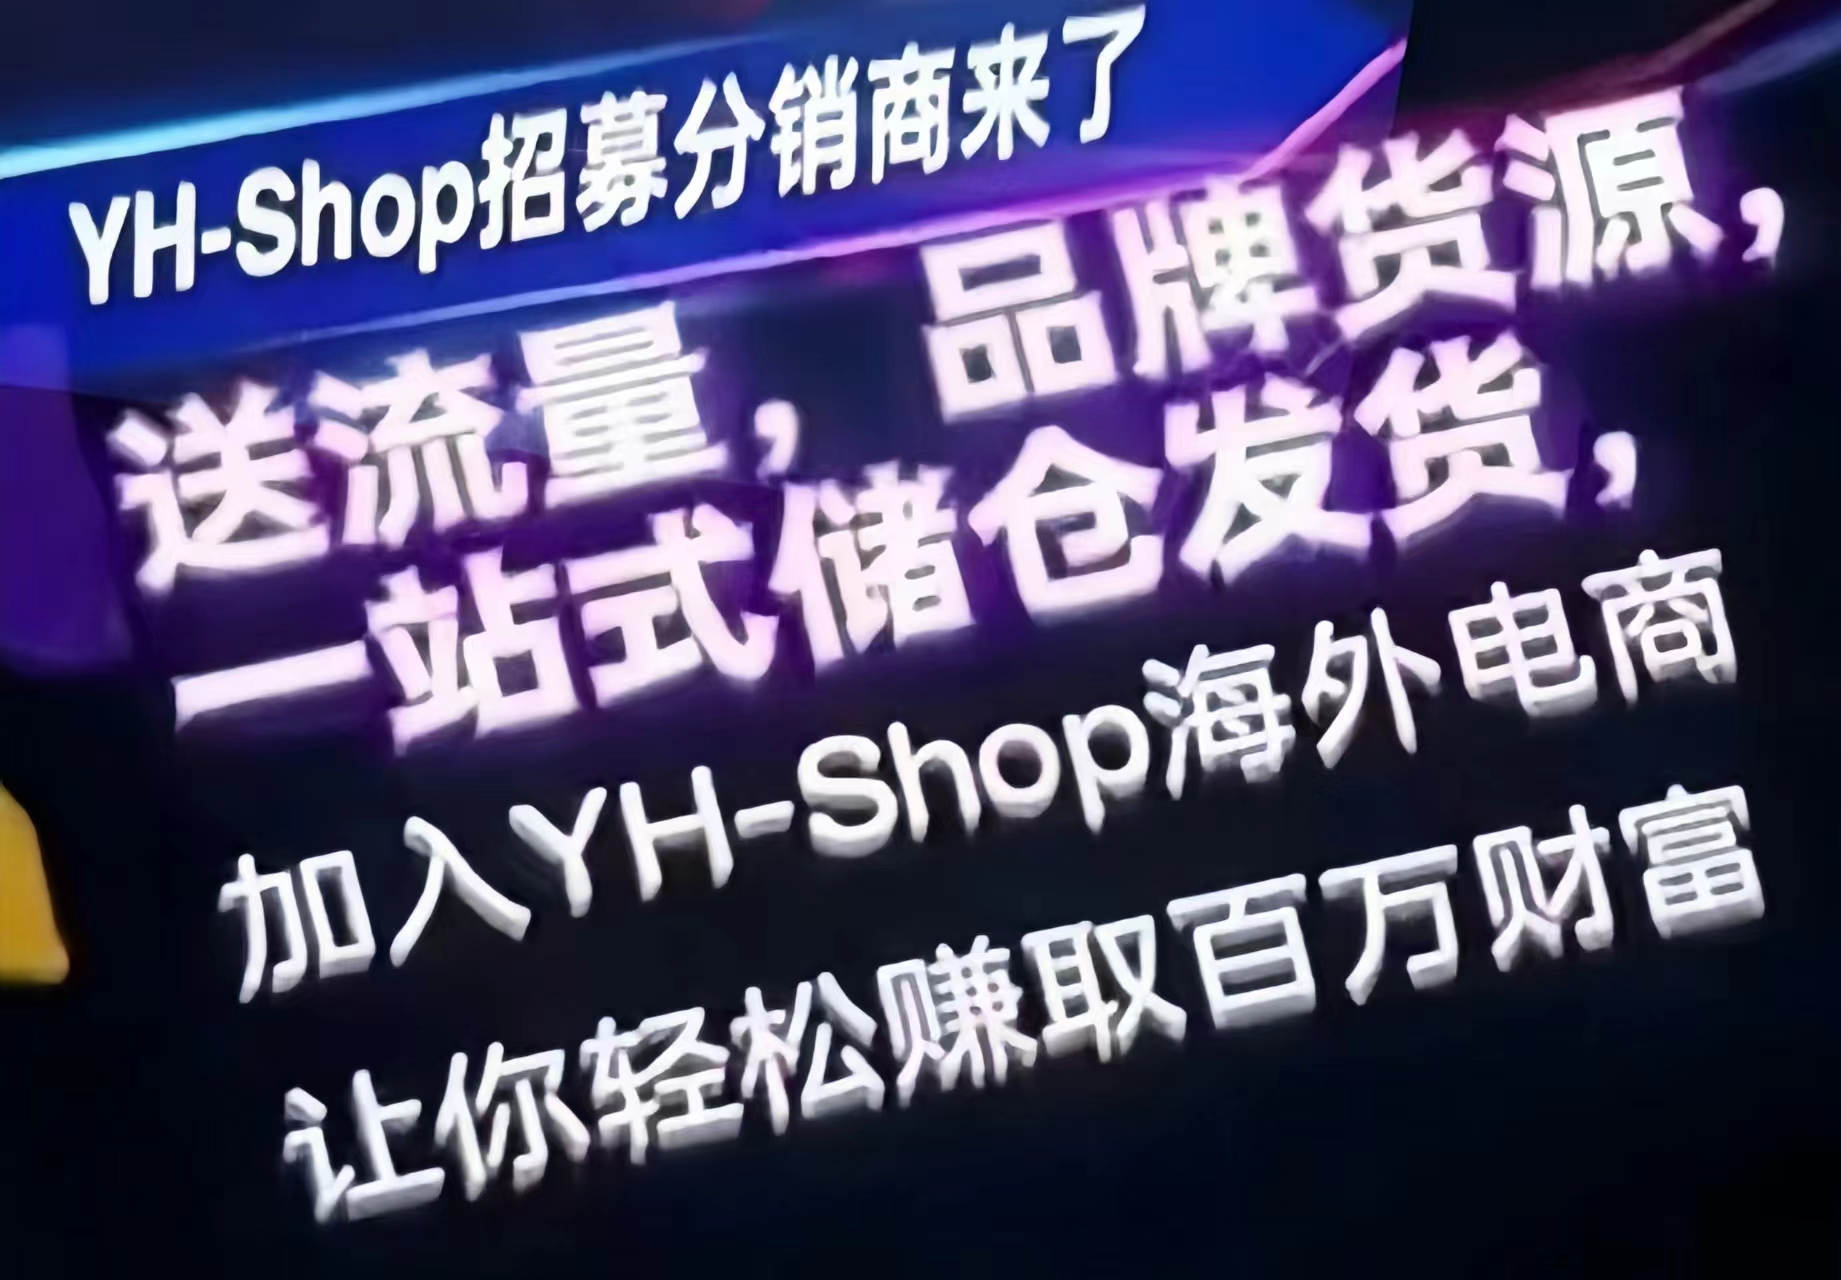 亚汉YH-shop：新型无货源跨境电商，招募0元店主诺干名！-首码网-网上创业赚钱首码项目发布推广平台